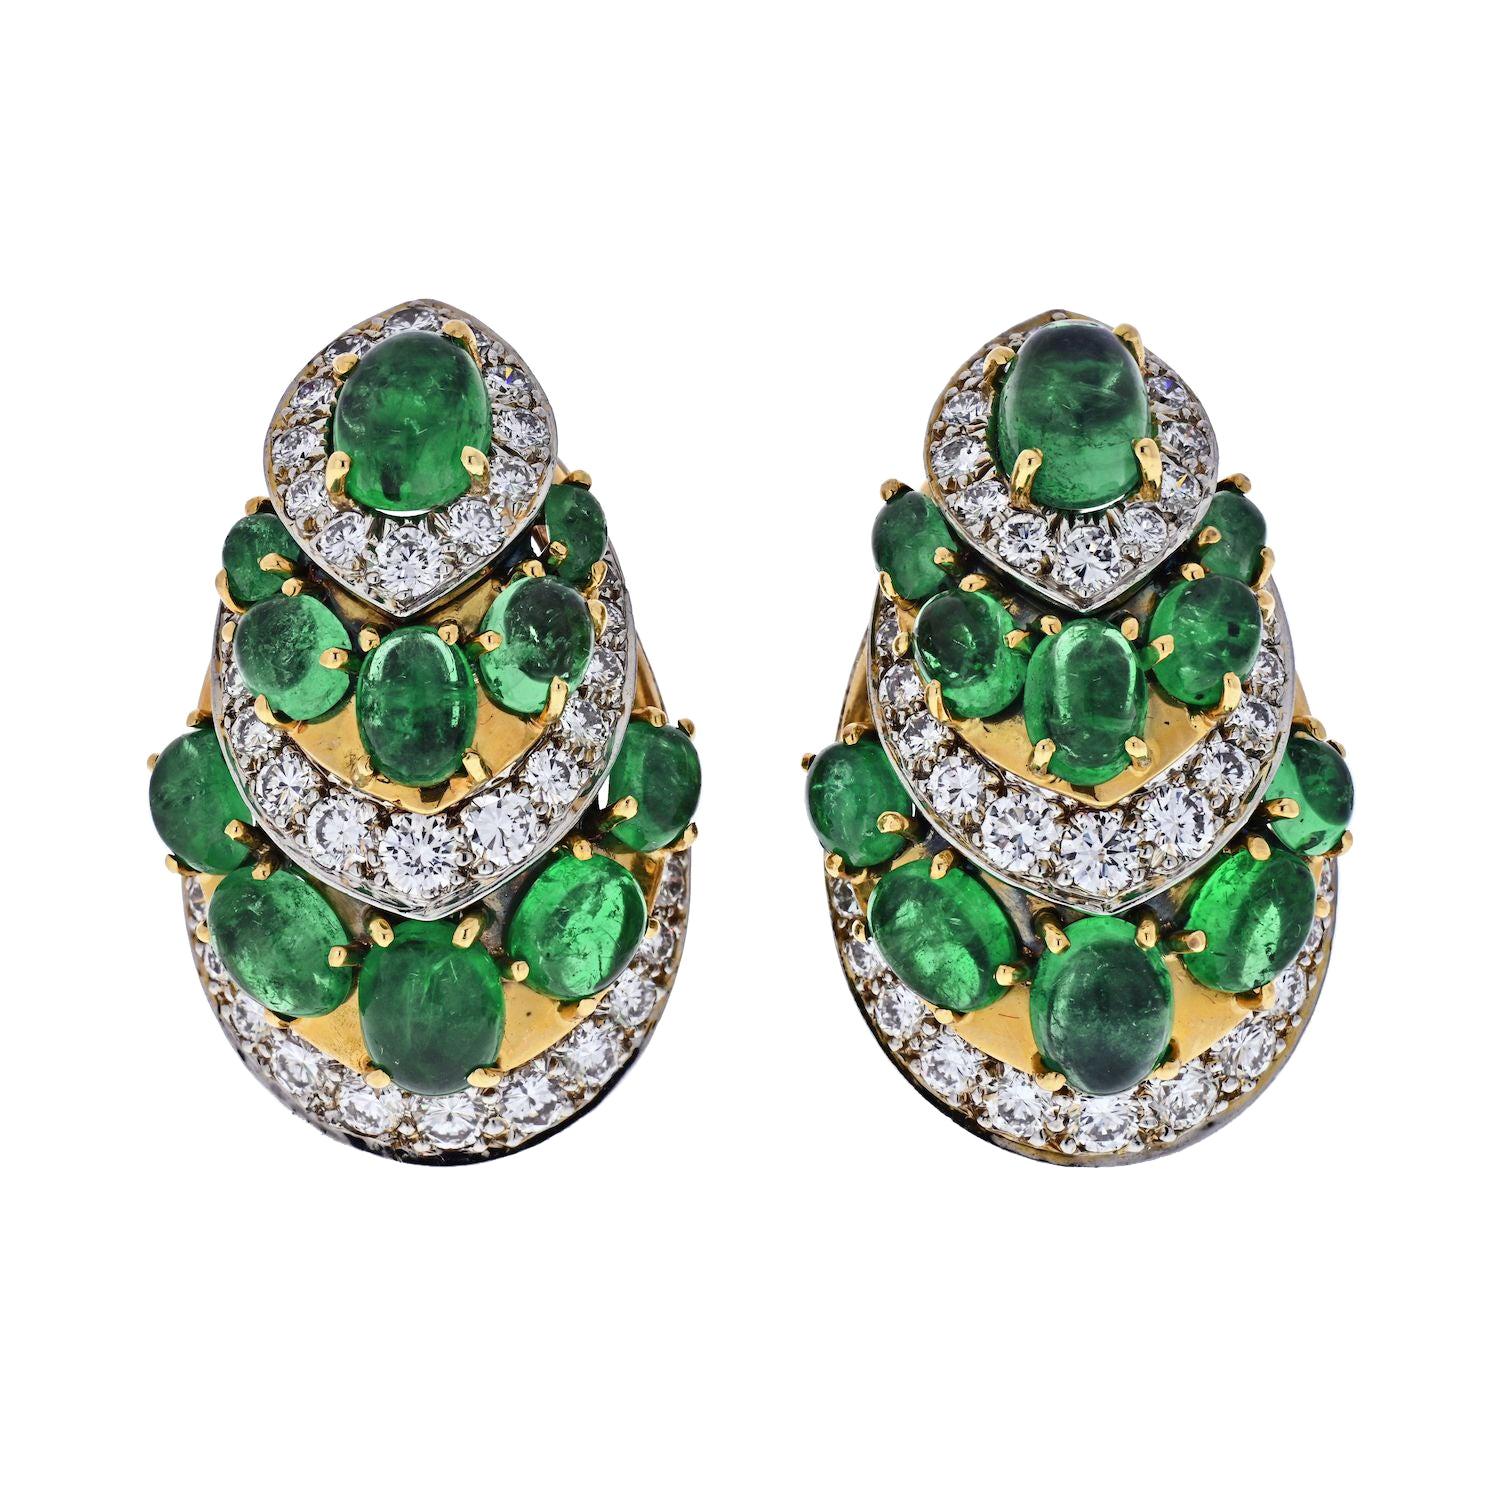 Diamant- und grüne Smaragd-Ohrringe aus Platin und 18 Karat Gelbgold von David Webb